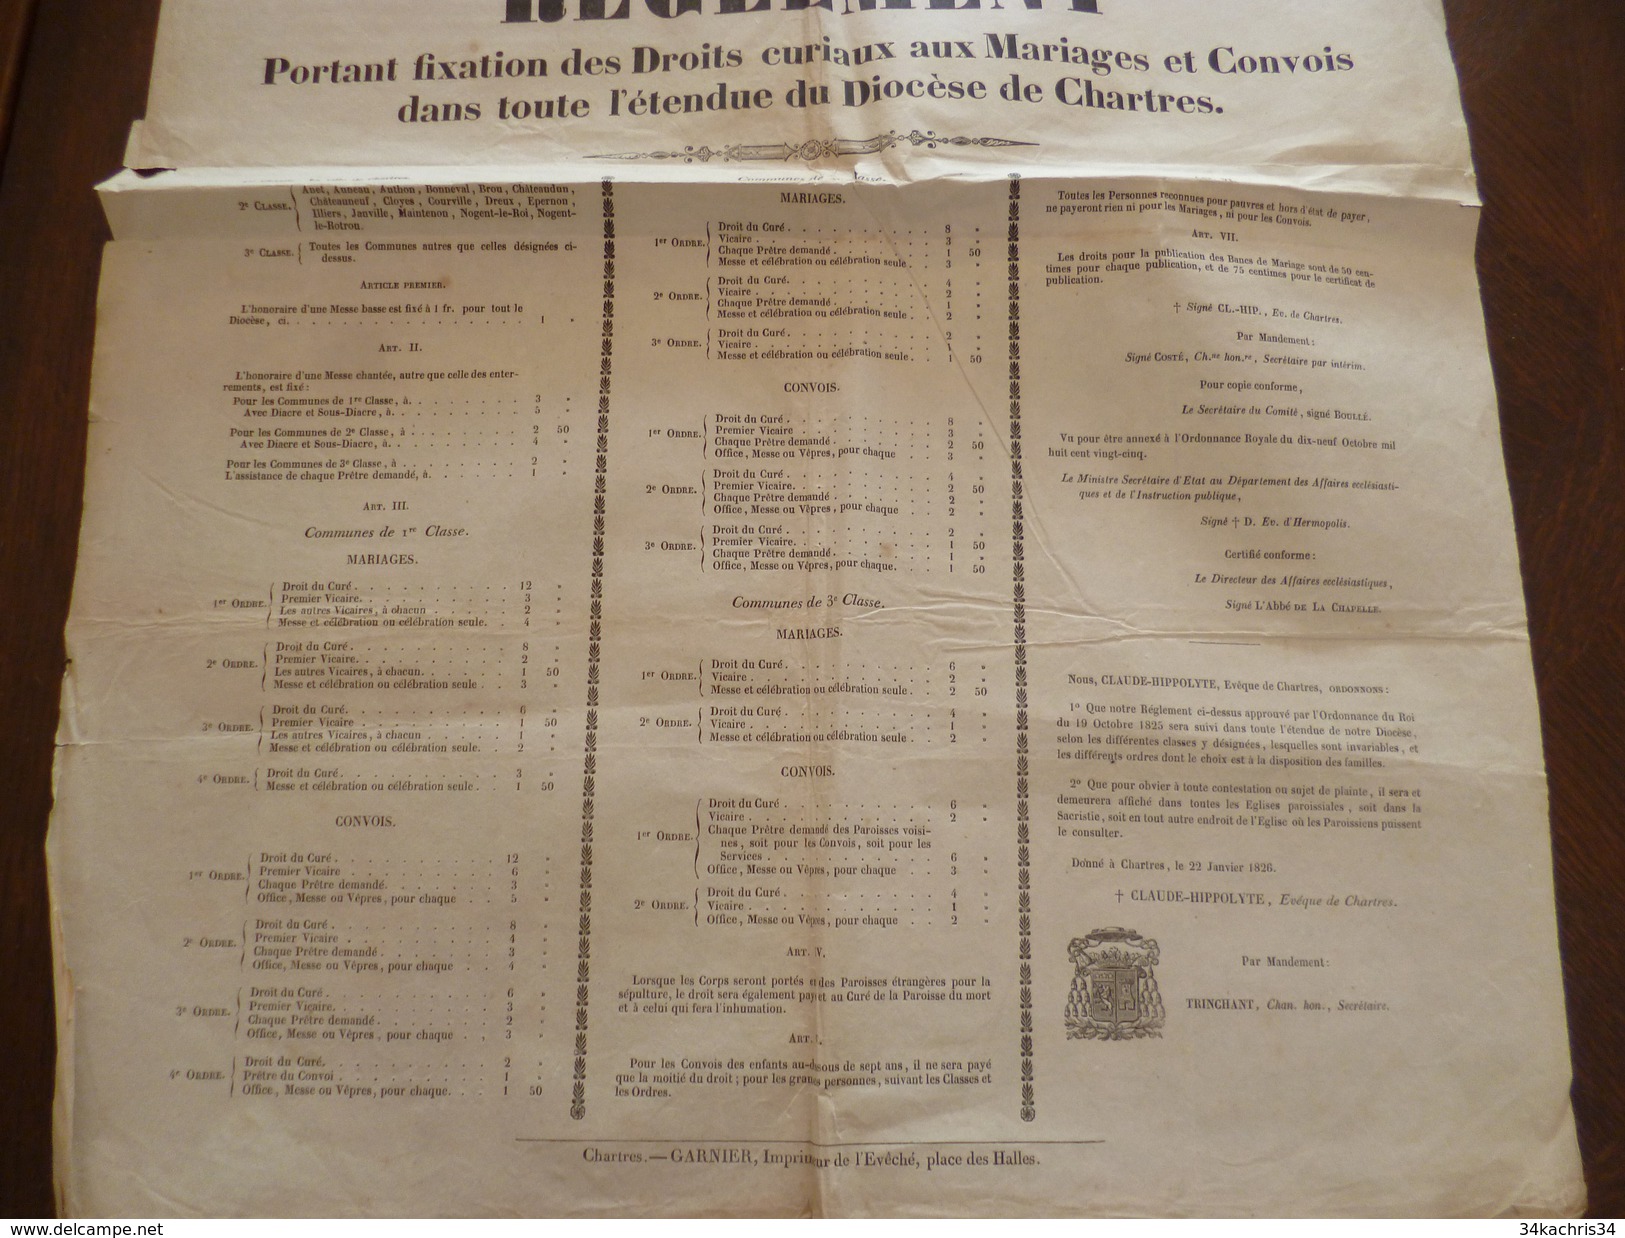 Affiche Placard Ordonnance Du Roi Chartres Fixation Des Droits Curiaux Aux Mariages Et Convois 22/01/1826 Formt 2X A3 - Wetten & Decreten